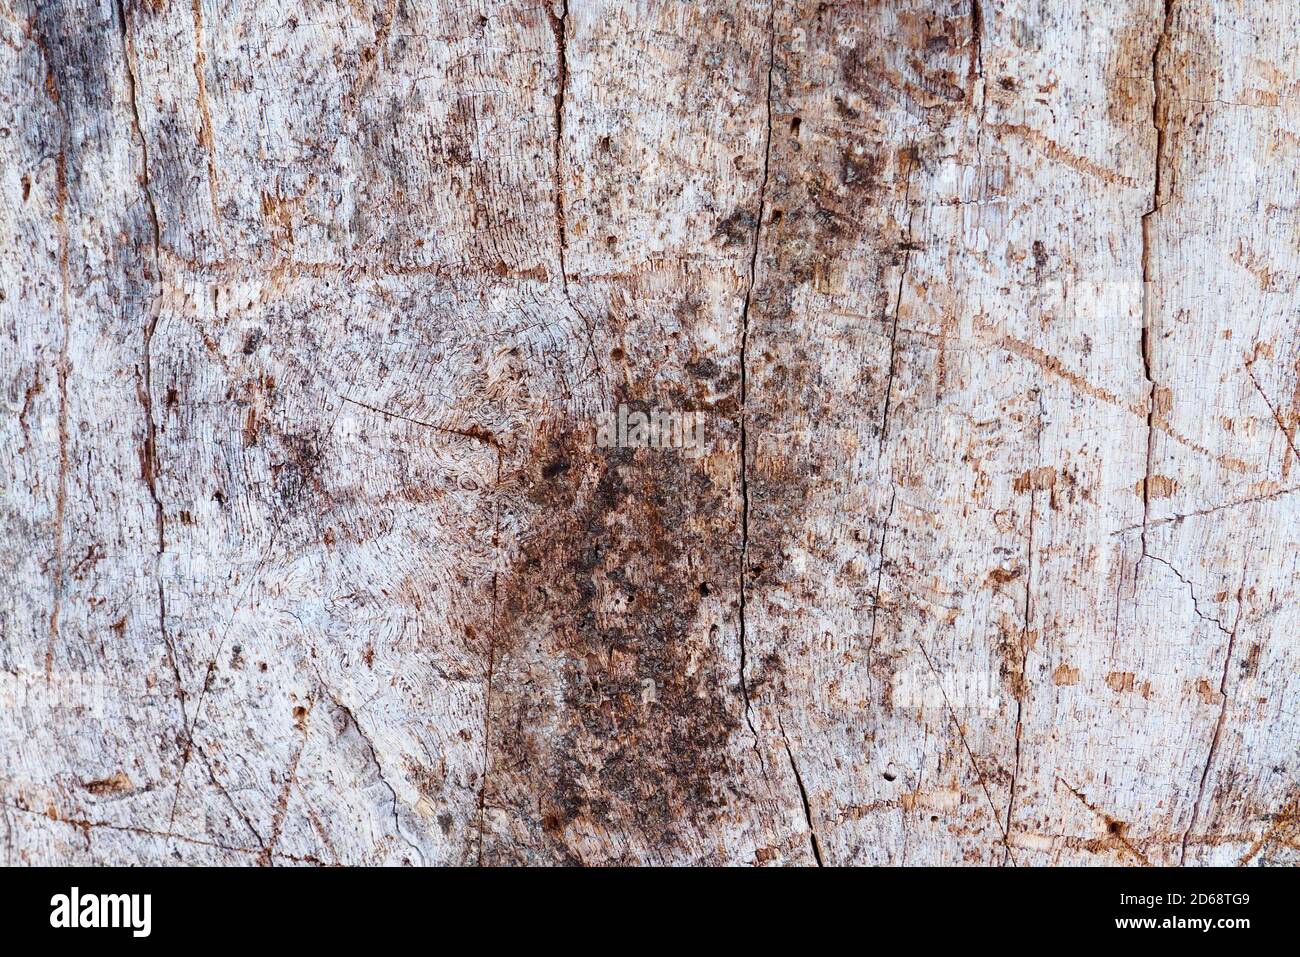 Primer plano de tronco de árbol sin corteza, textura rugosa de madera de fondo Foto de stock